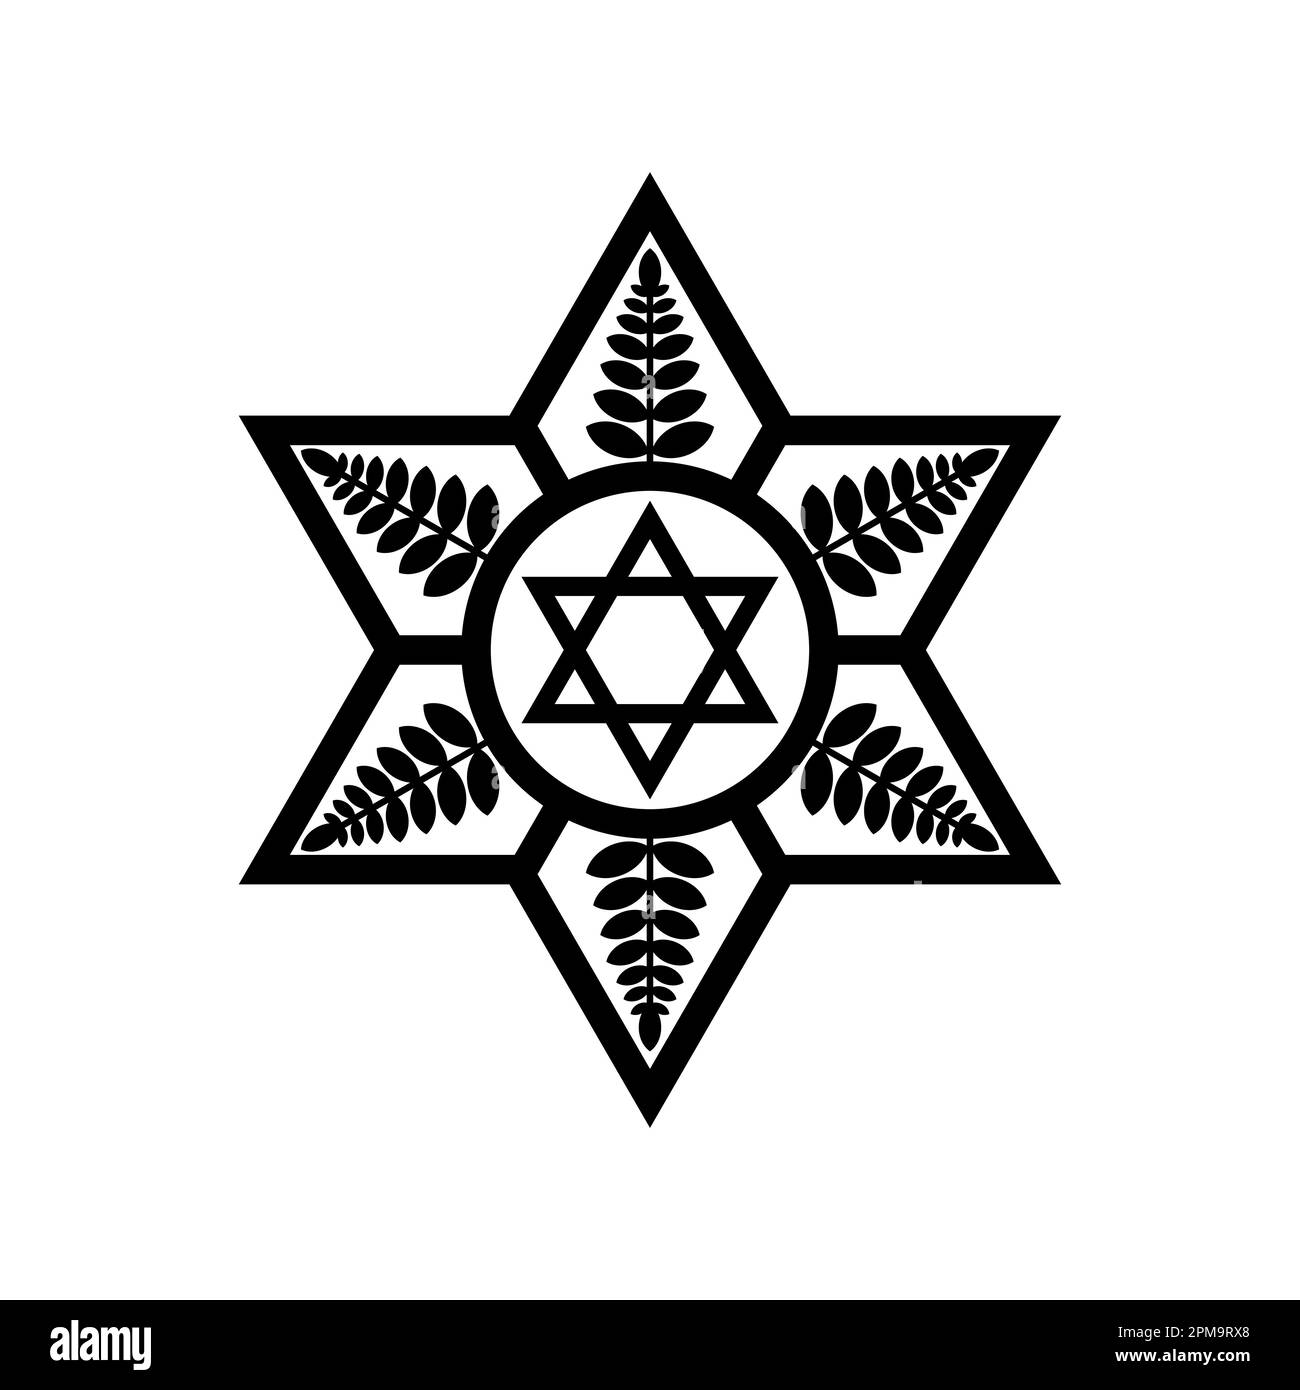 Illustrazione vettoriale del simbolo della Stella ebraica di Davide combinato con elementi decorativi di design. Illustrazione Vettoriale